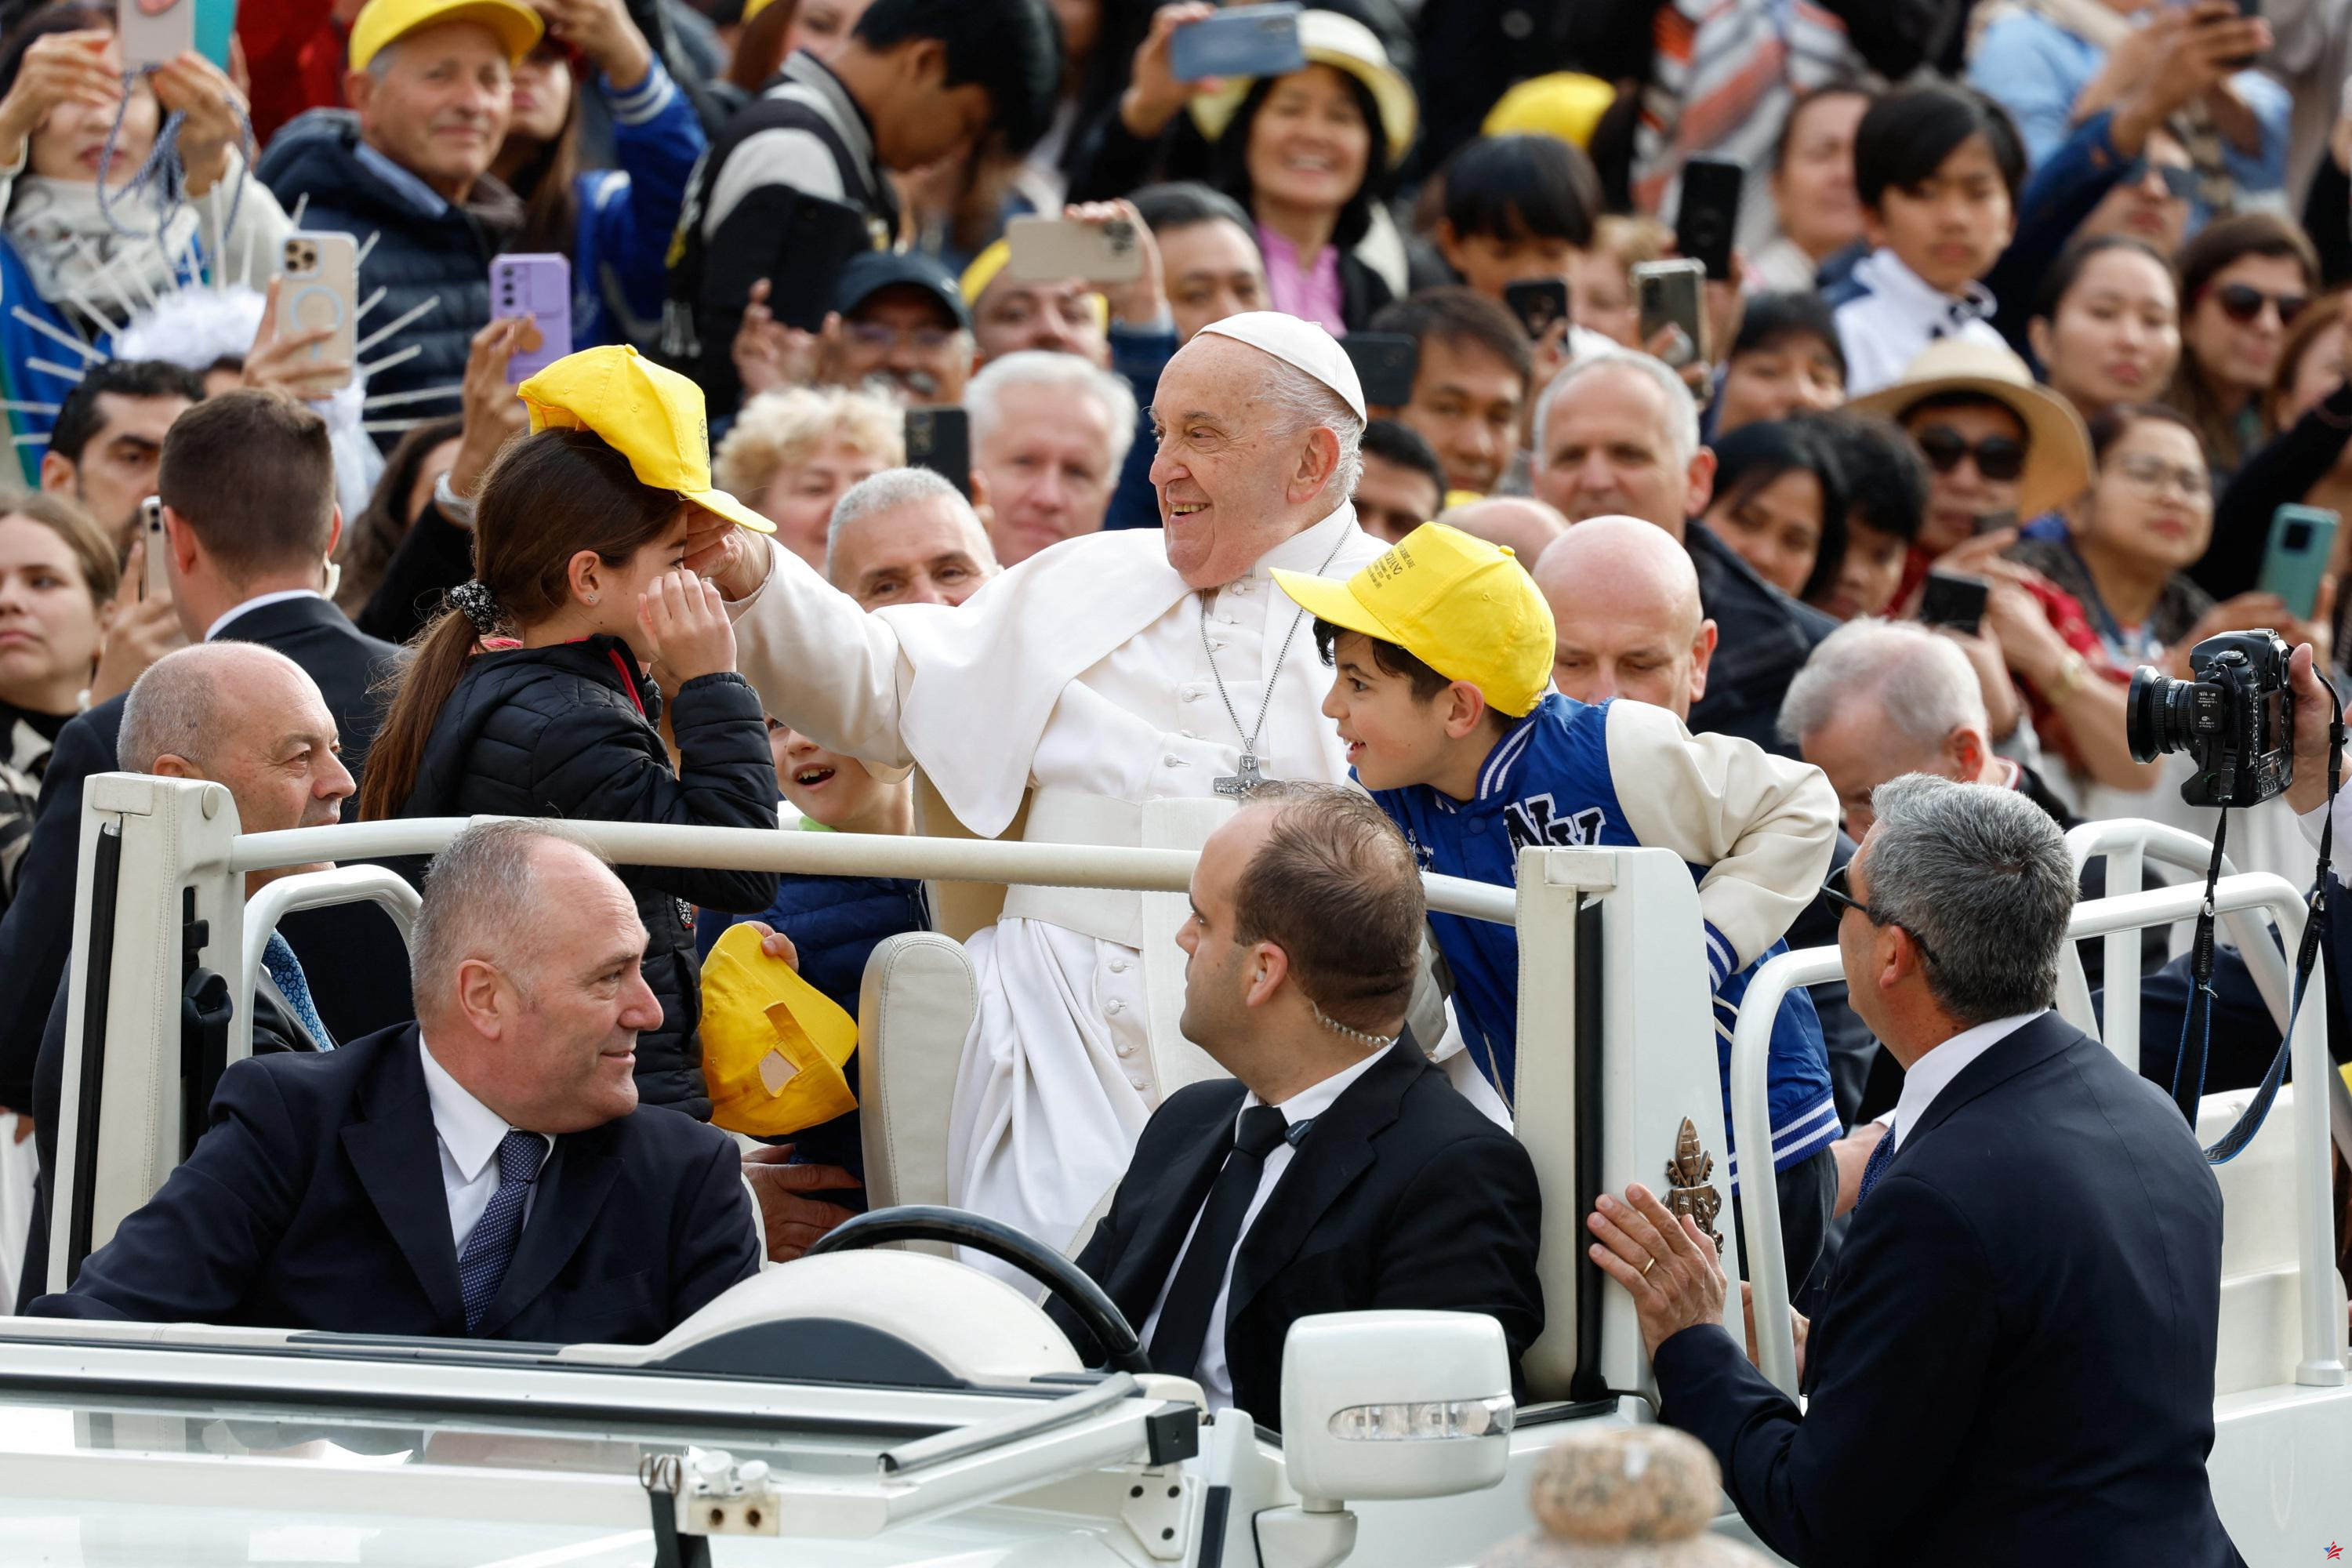 El Papa Francisco visitará cuatro países de Asia y Oceanía en septiembre